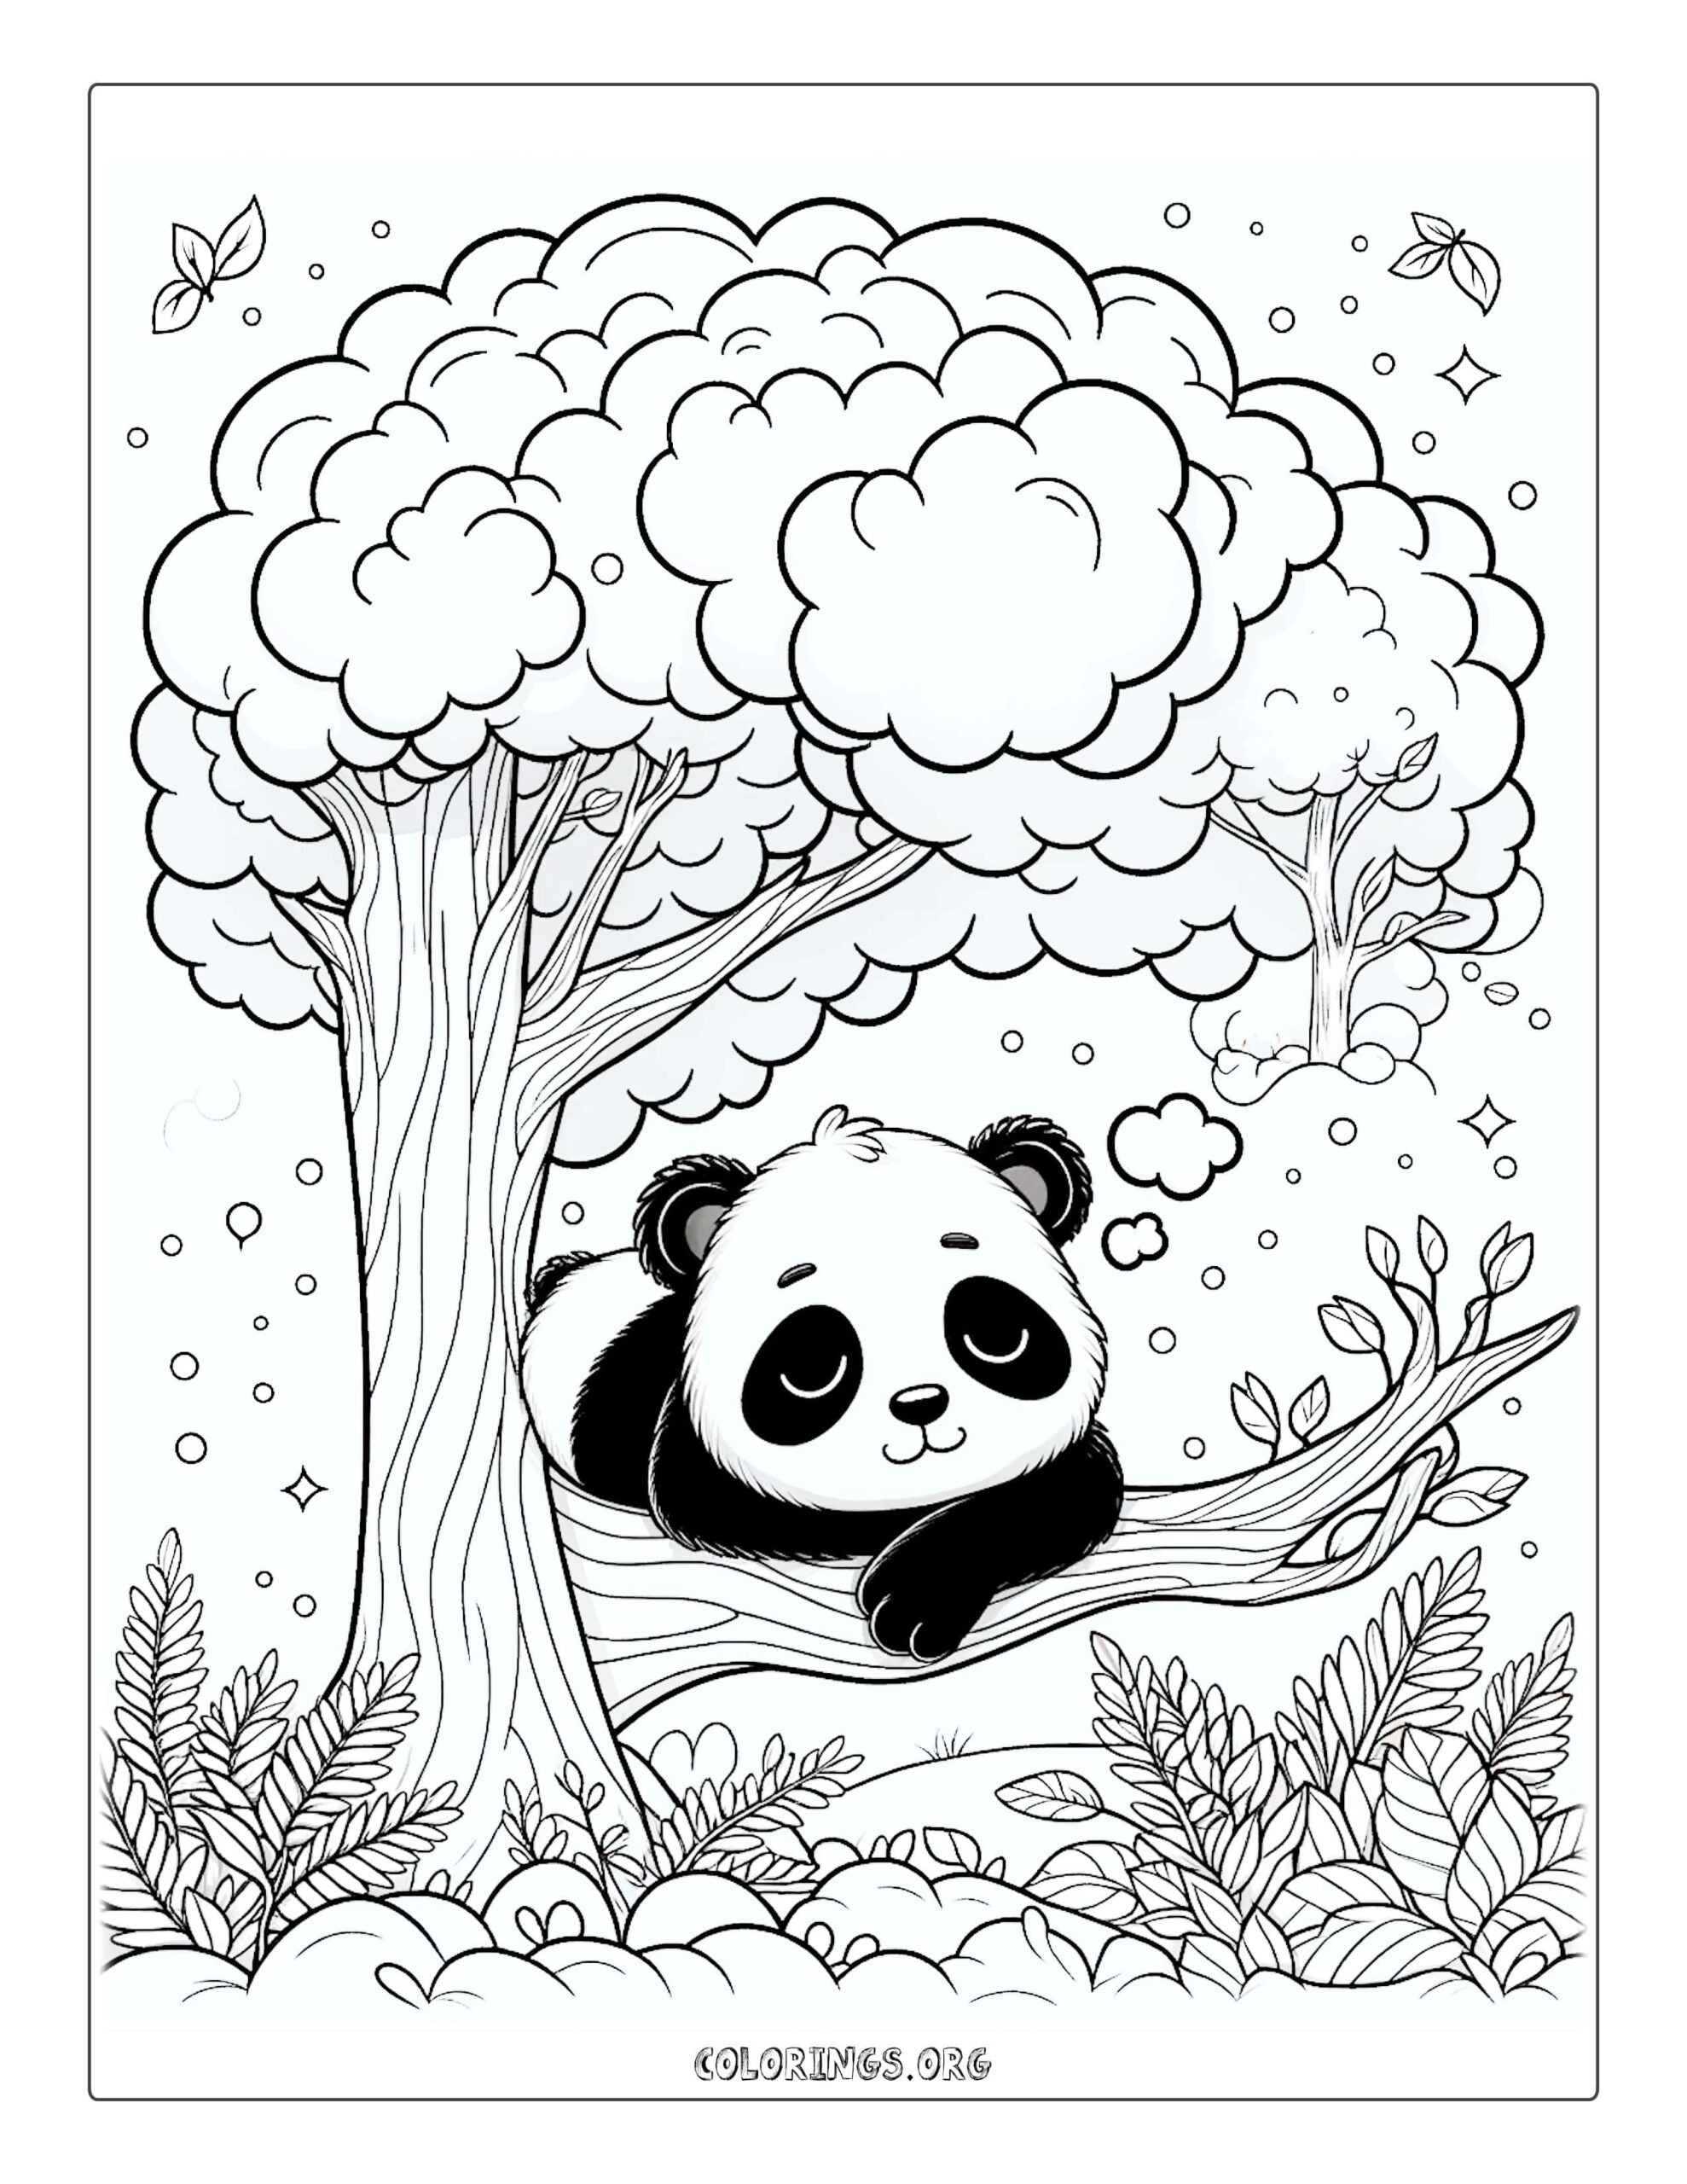 Sleepy Panda in Tree Coloring Page